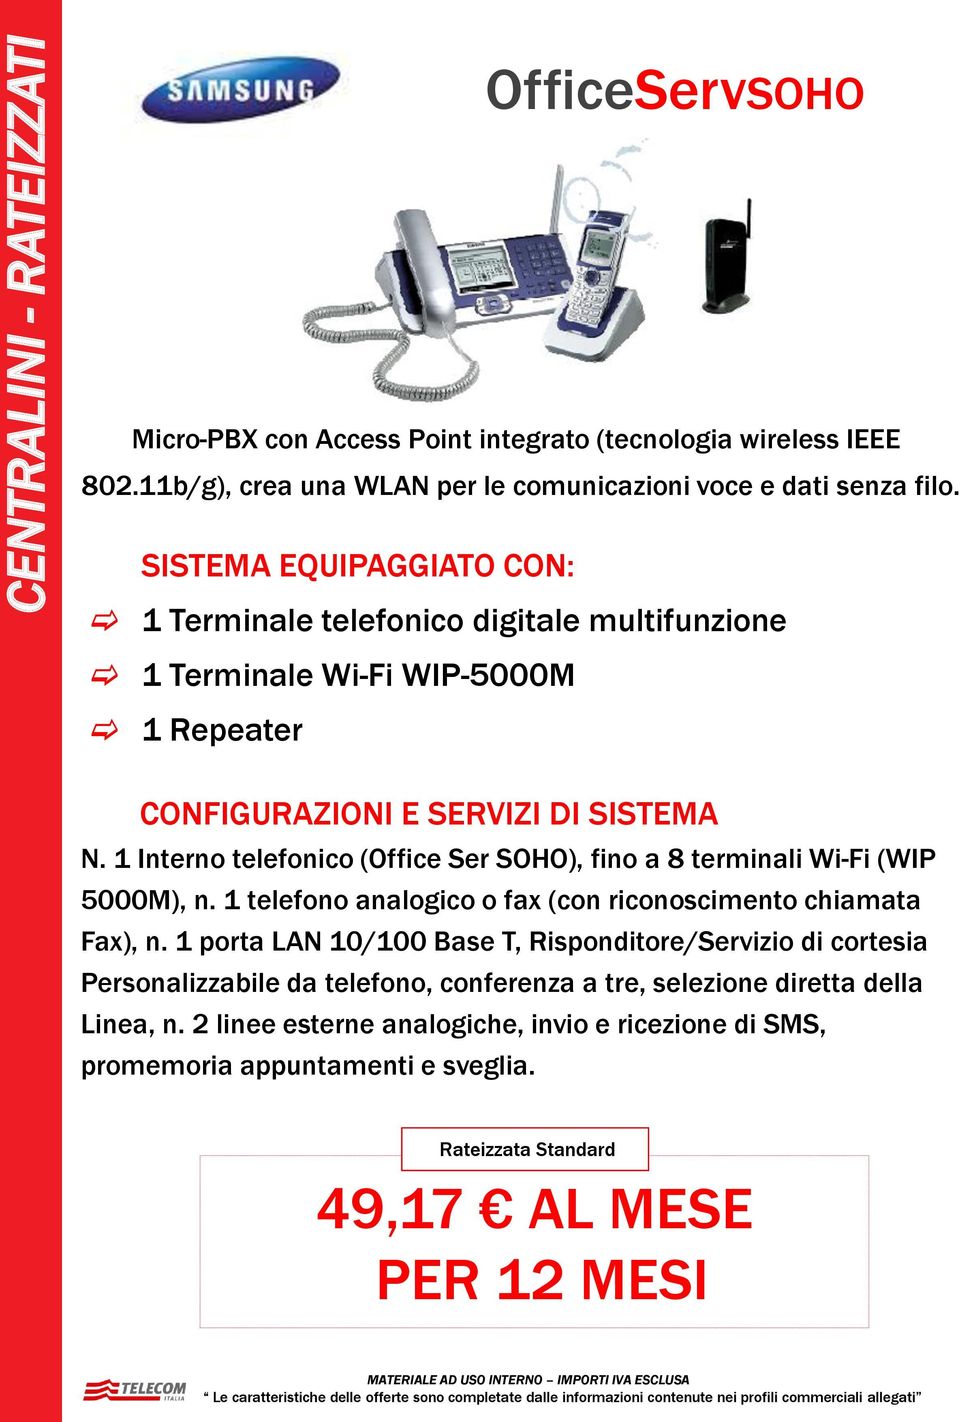 1 Interno telefonico (Office Ser SOHO), fino a 8 terminali Wi-Fi (WIP 5000M), n. 1 telefono analogico o fax (con riconoscimento chiamata Fax), n.